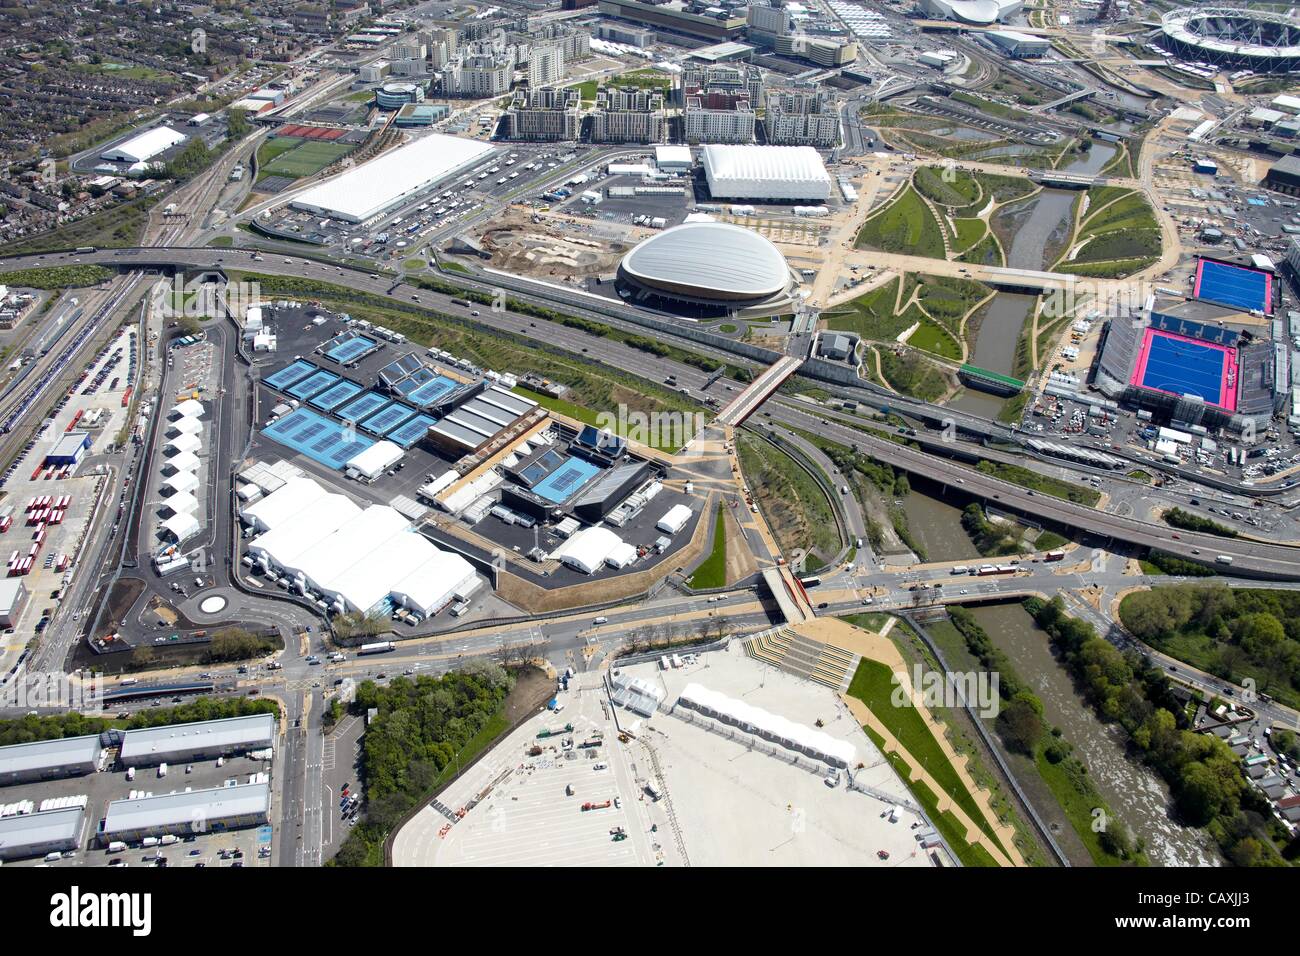 Photographie aérienne au sud du Parc olympique, le site olympique de Londres 2012, Stratford London E20 UK, 30 avril 2012 Banque D'Images